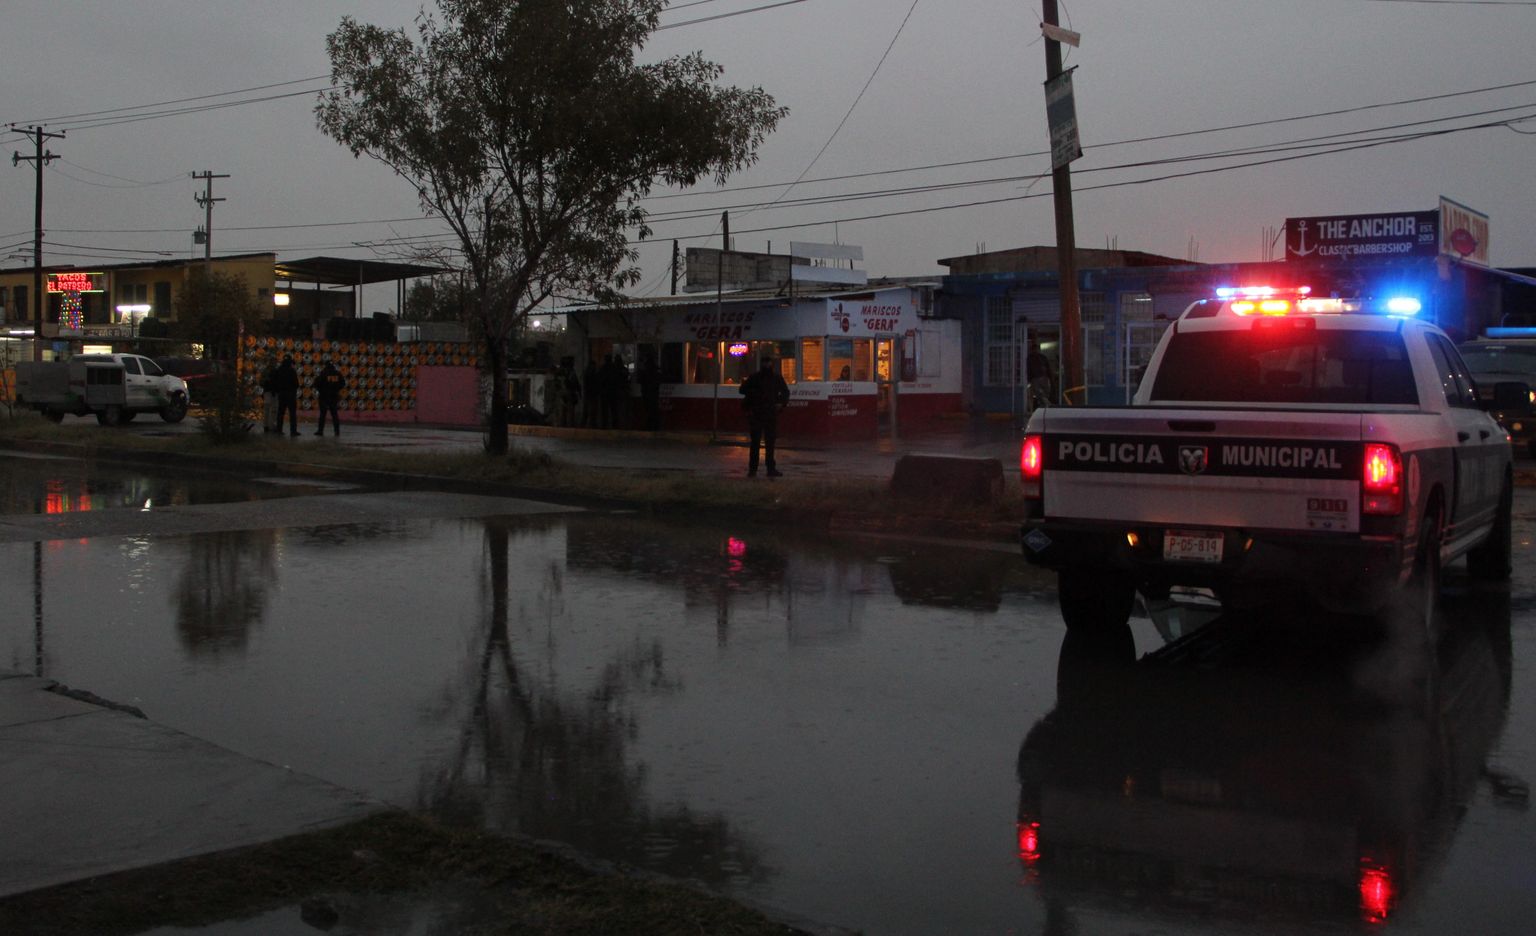 Ciudad Juarezi politsei järjekordses mõrvapaigas.